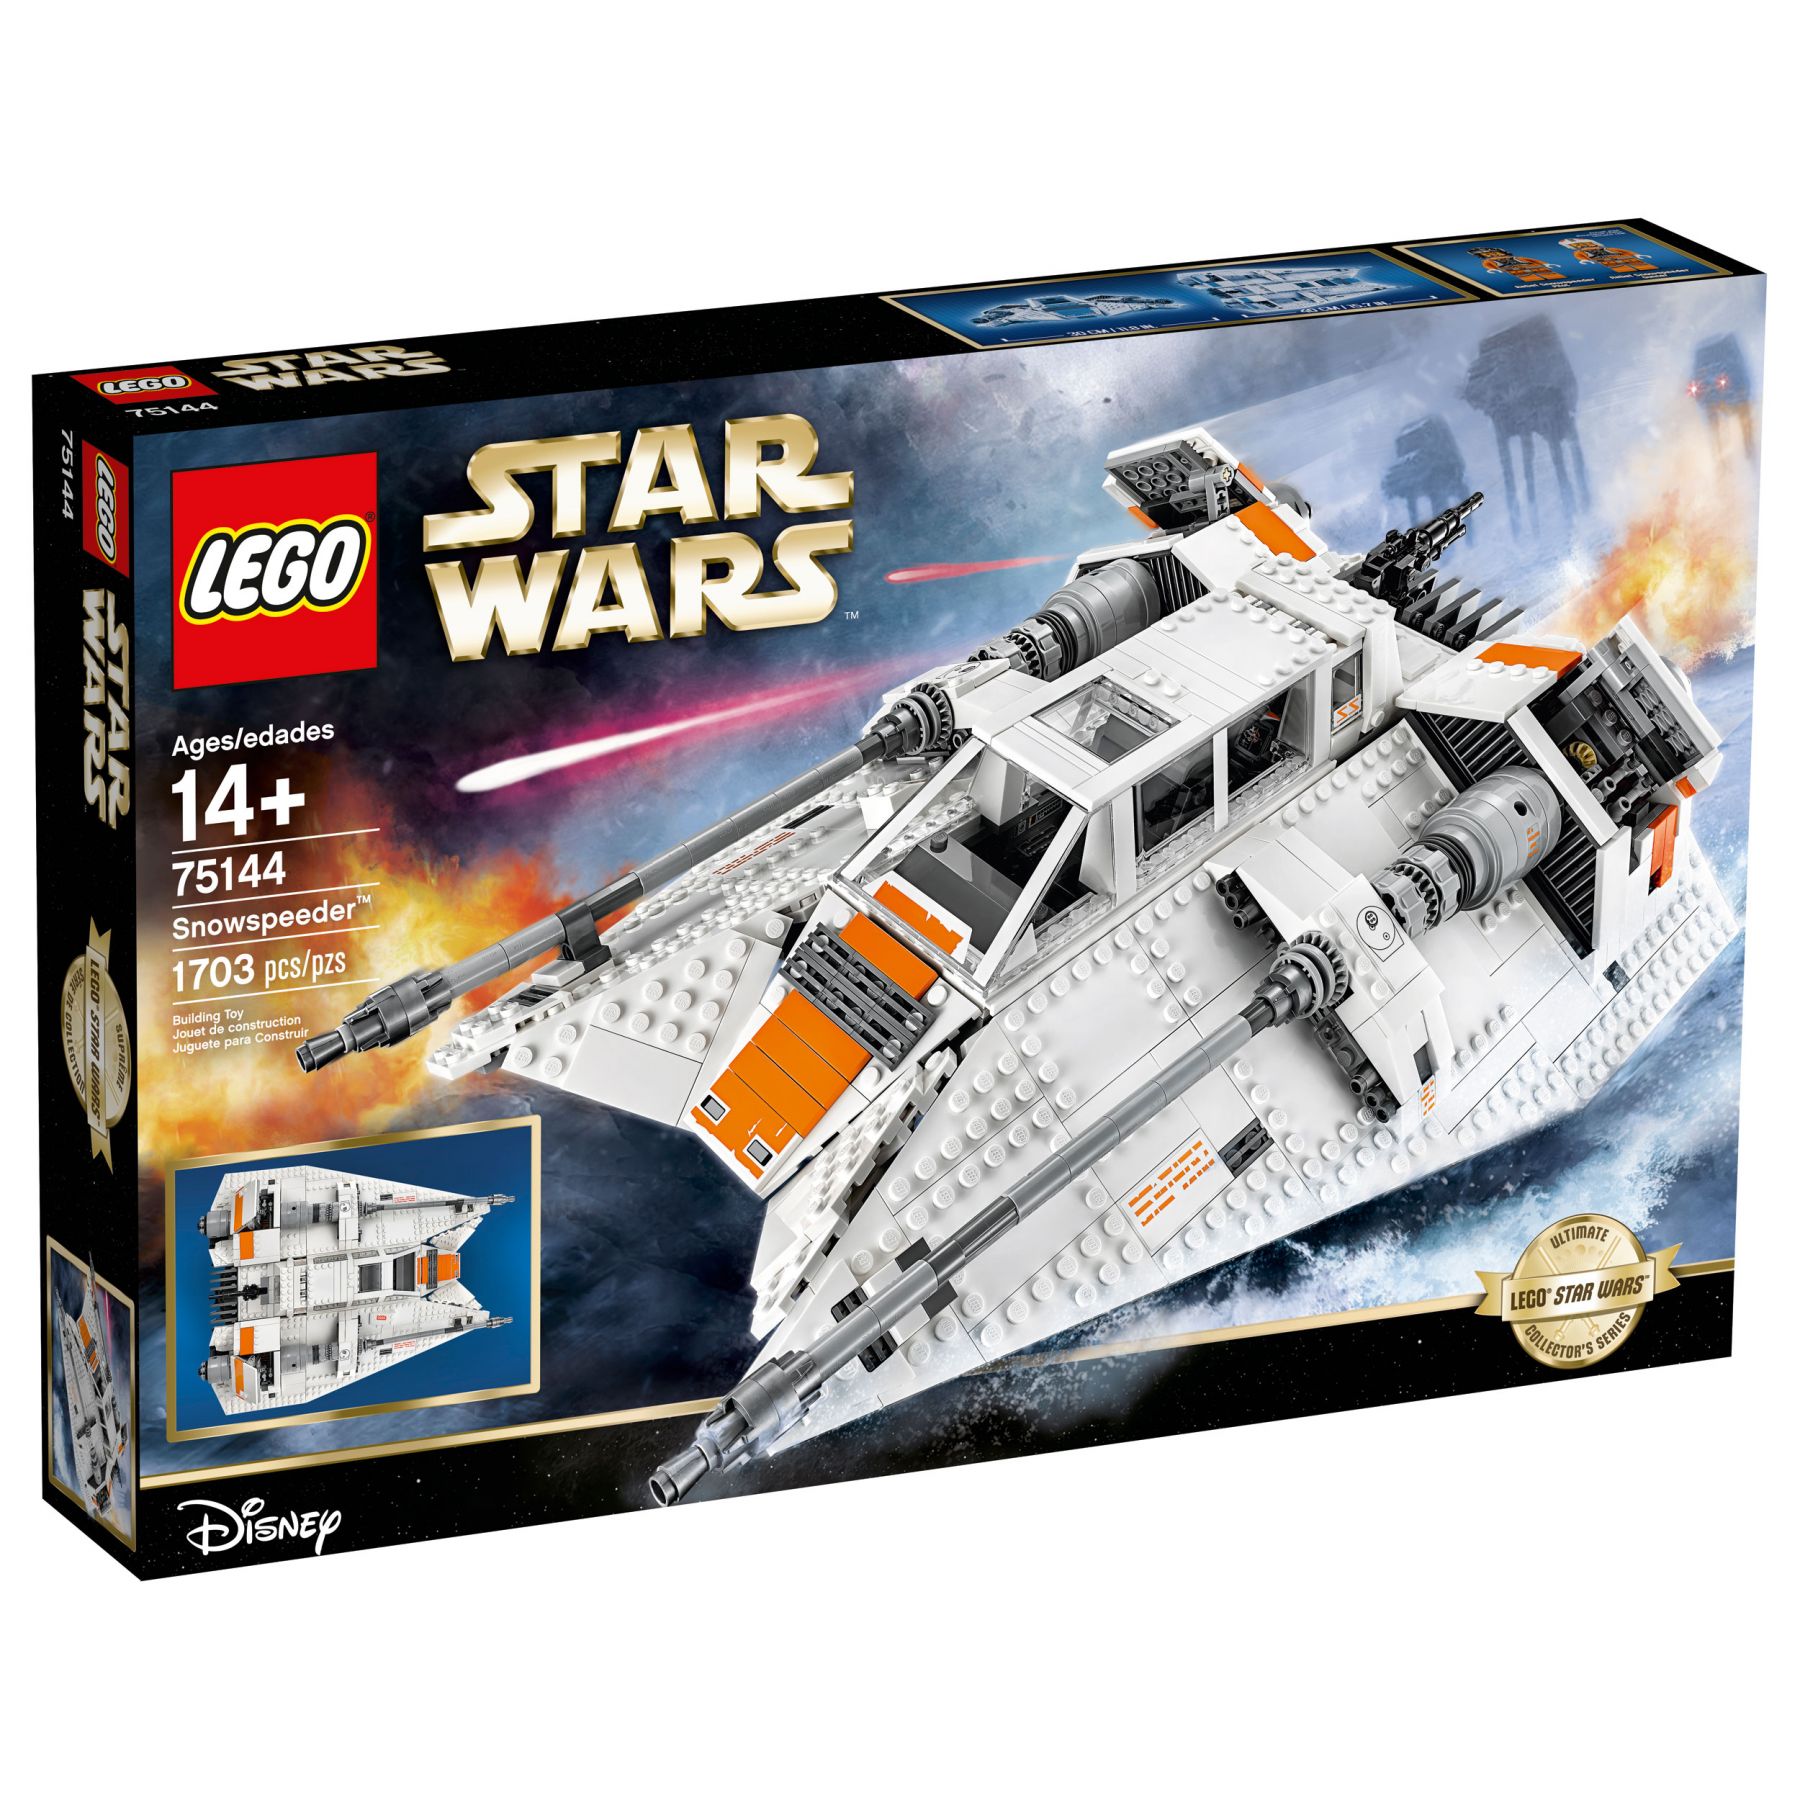 LEGO Star Wars 75144 Snowspeeder™ LEGO_Star_Wars_75144_Snowspeeder_UCS_Box.jpg